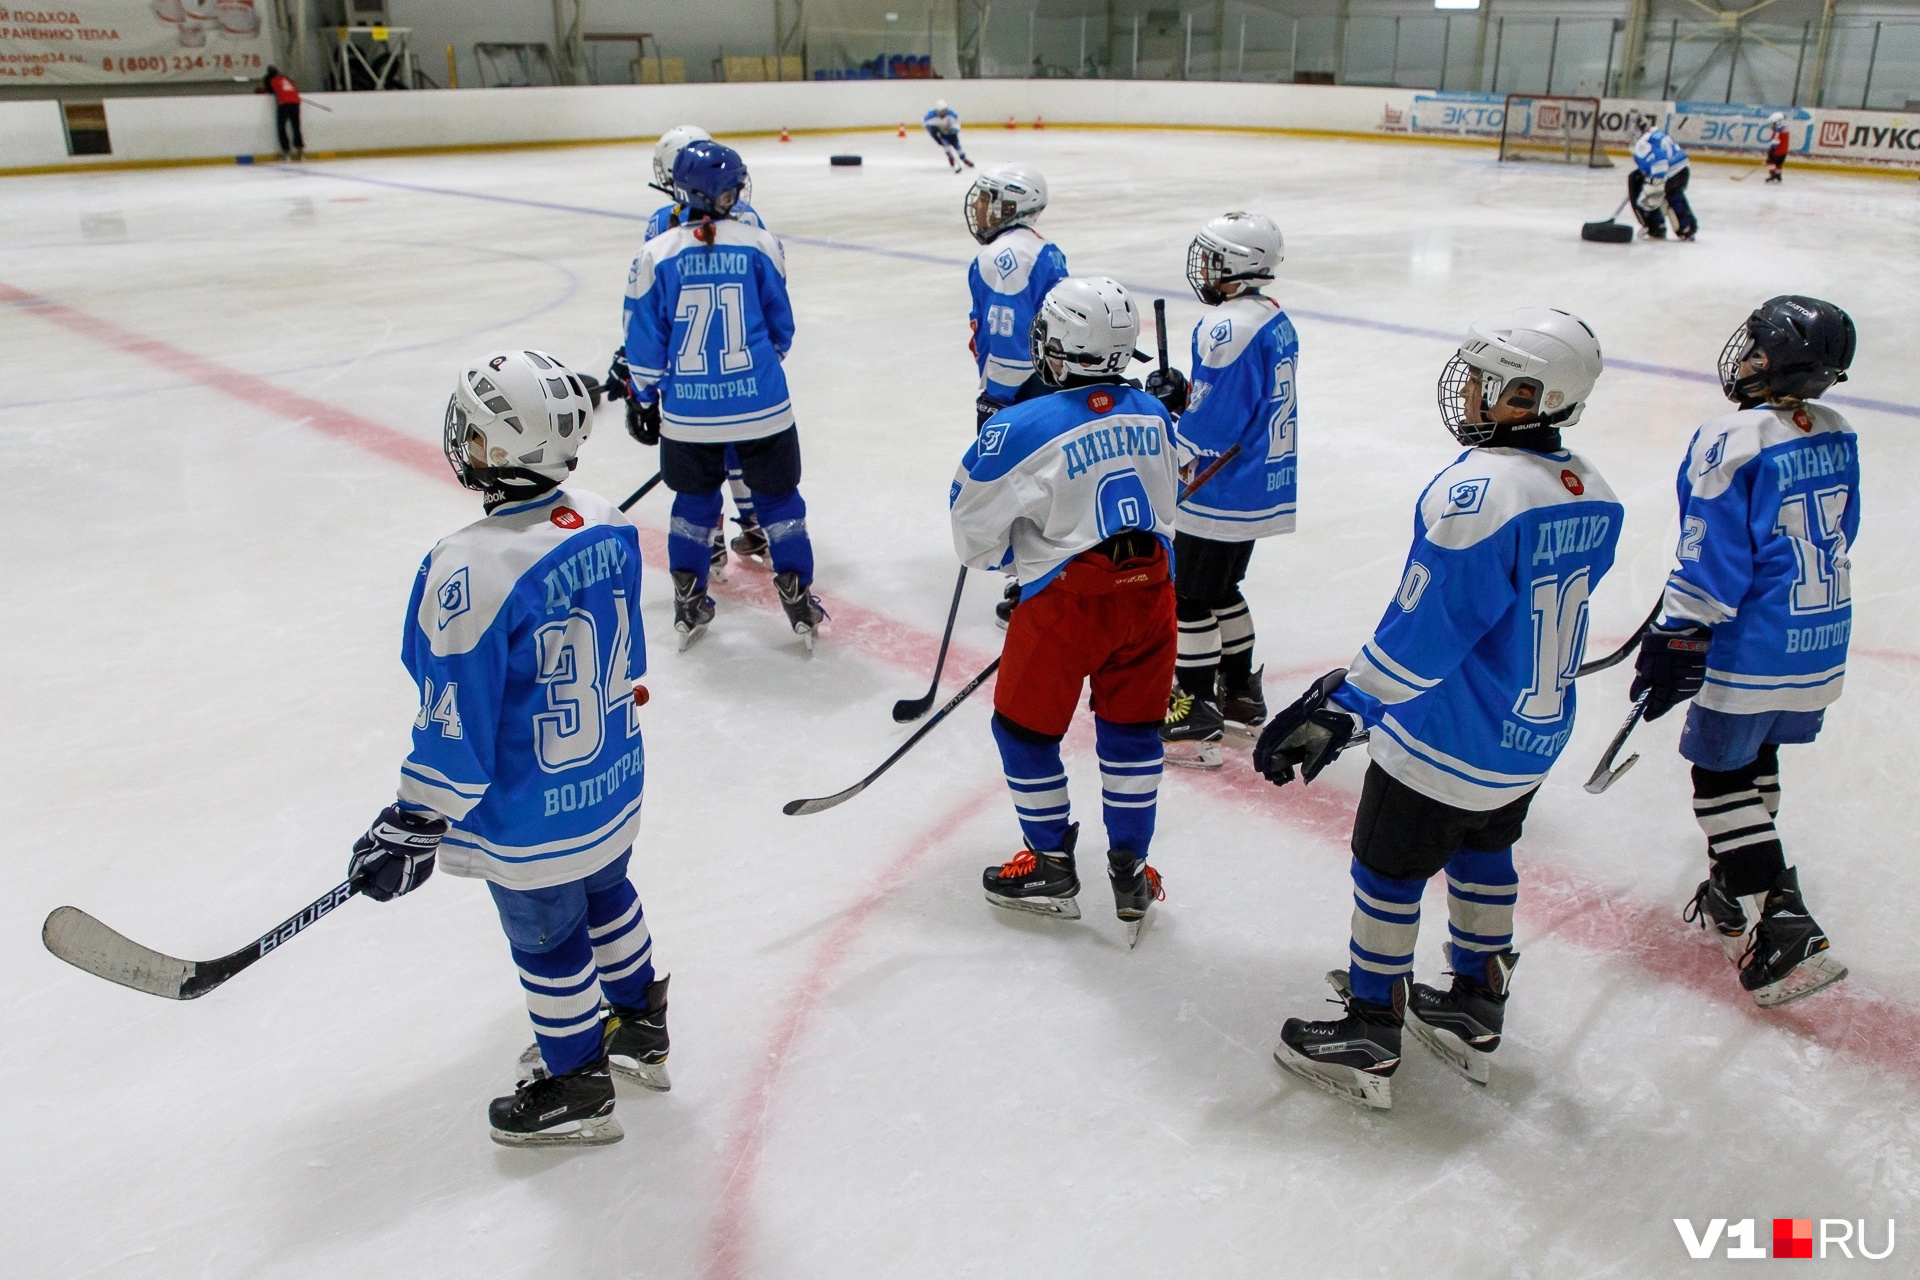 Занятия по хоккею проходят в школе зимних видов спорта